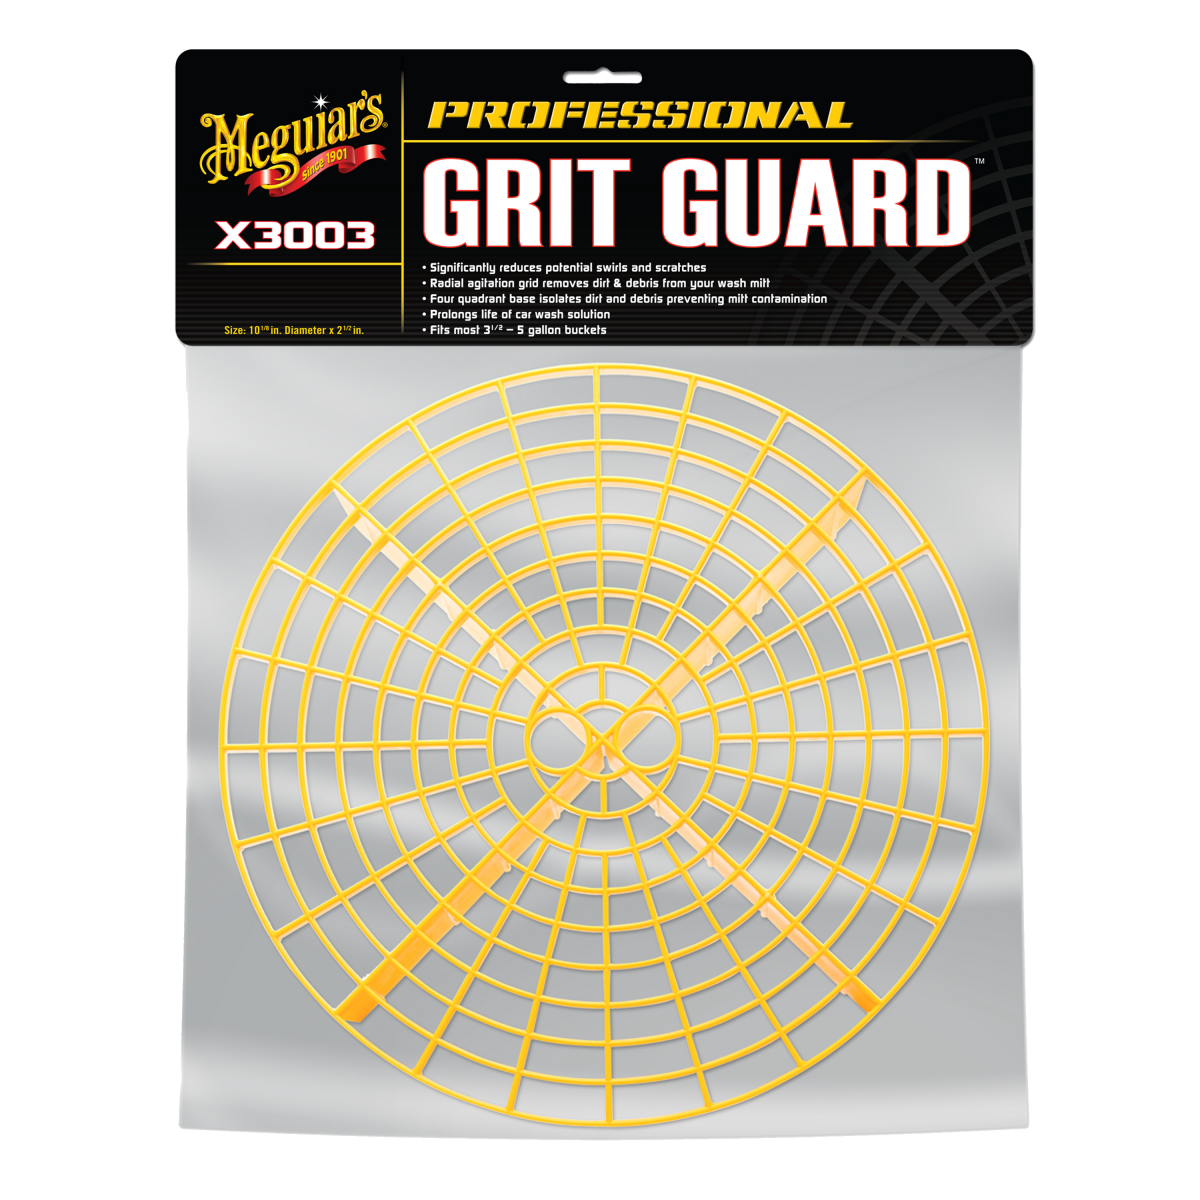 Meguiar’s Grit Guard